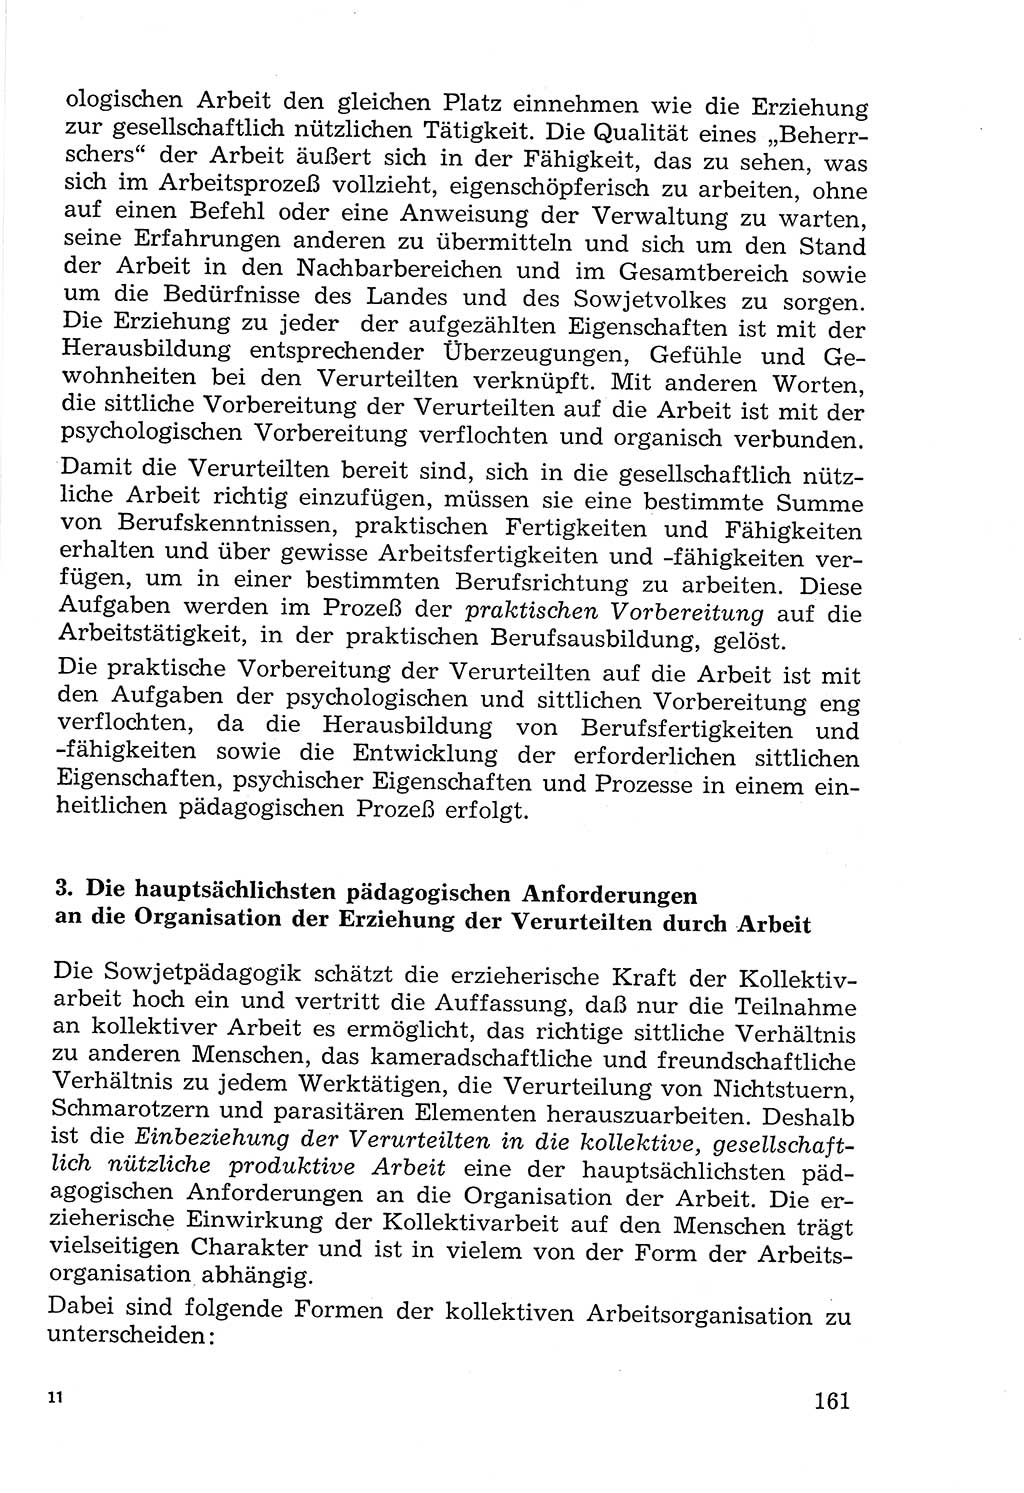 Lehrbuch der Strafvollzugspädagogik [Deutsche Demokratische Republik (DDR)] 1969, Seite 161 (Lb. SV-Pd. DDR 1969, S. 161)